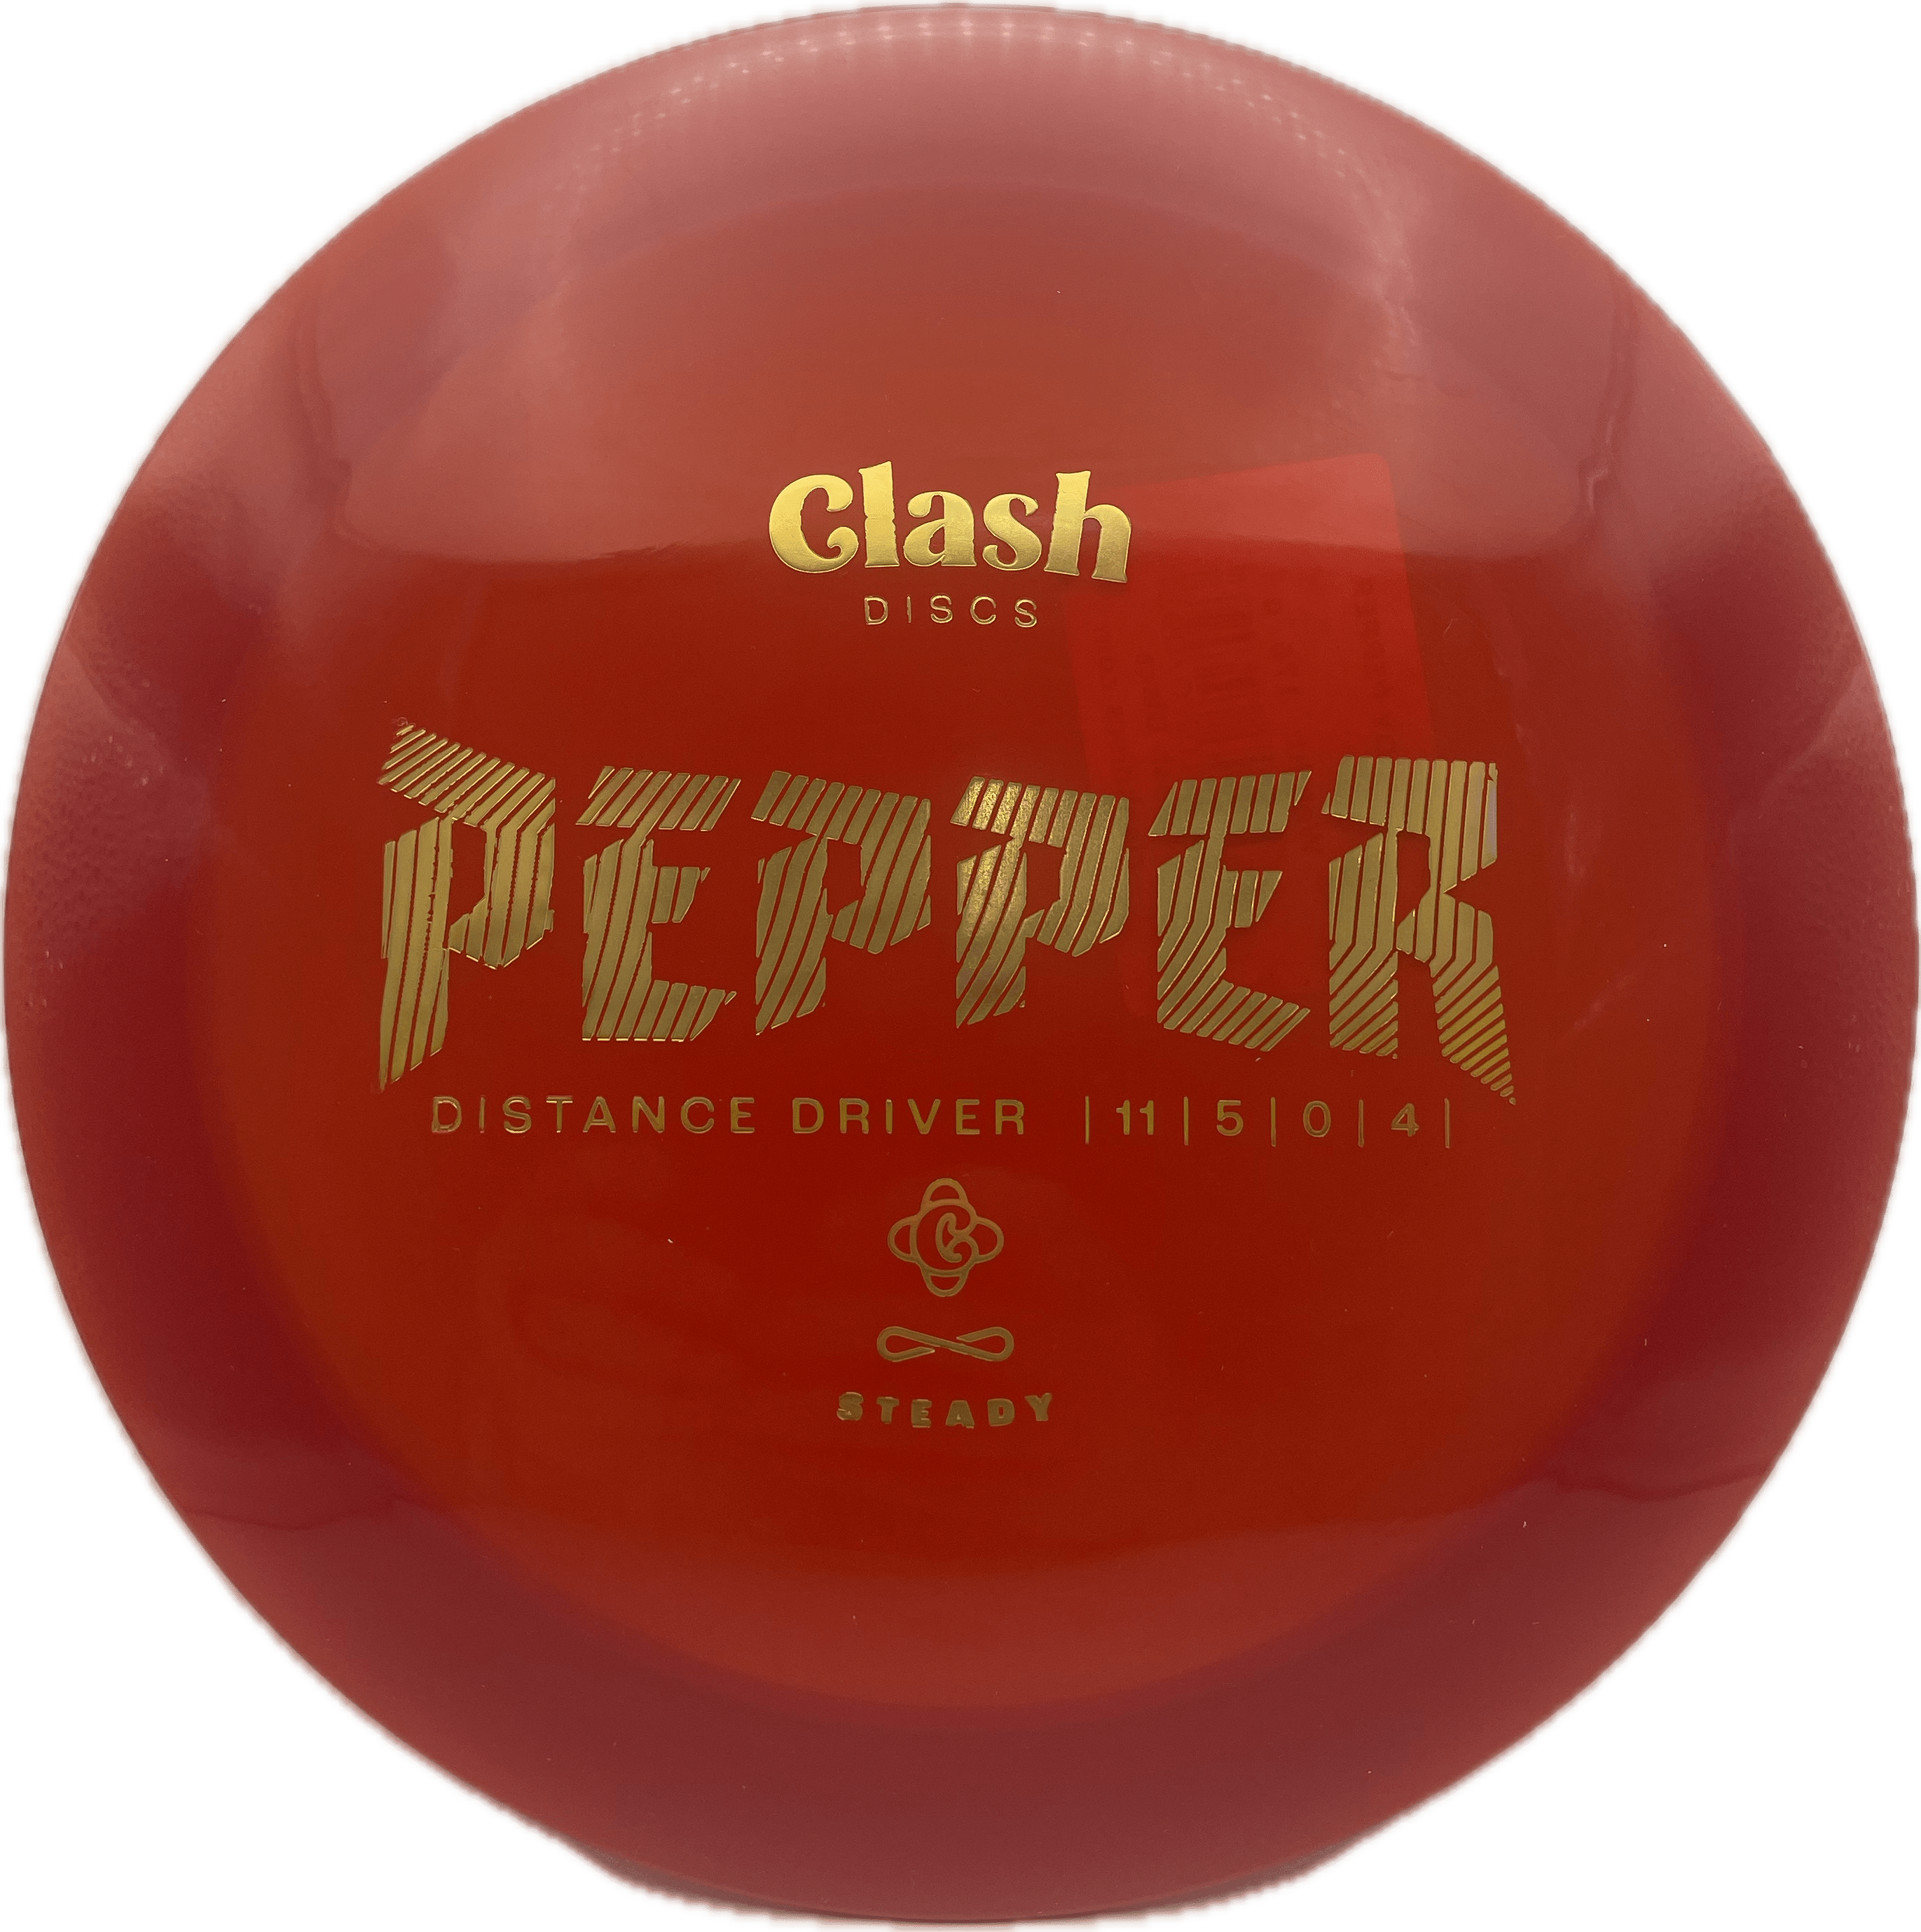 Clash Disc Clash Pepper, Steady, 176, Red, Gold Metallic